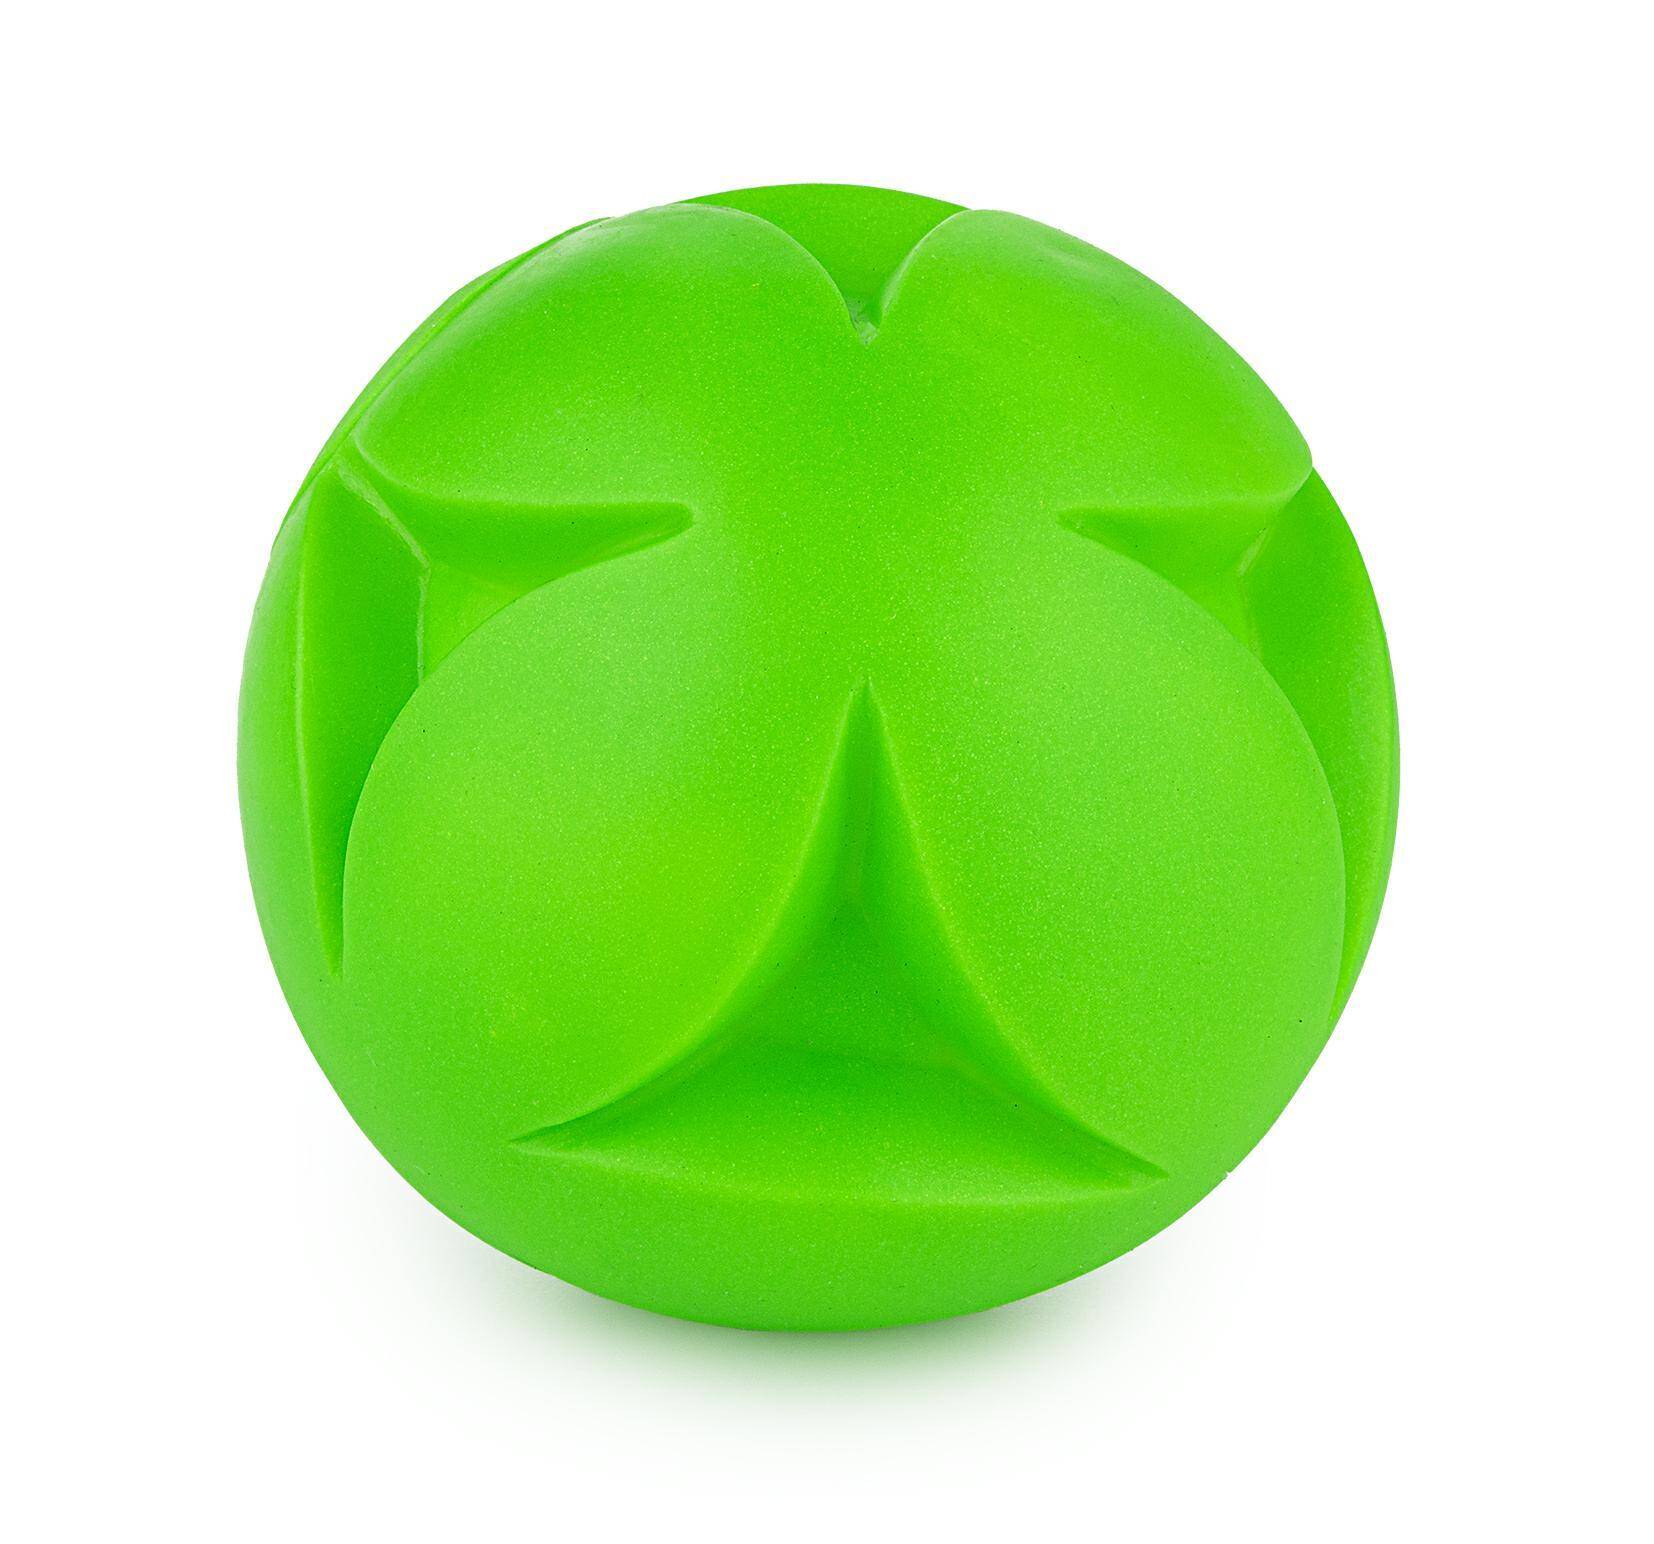 Z838 piłka zielona 10cm